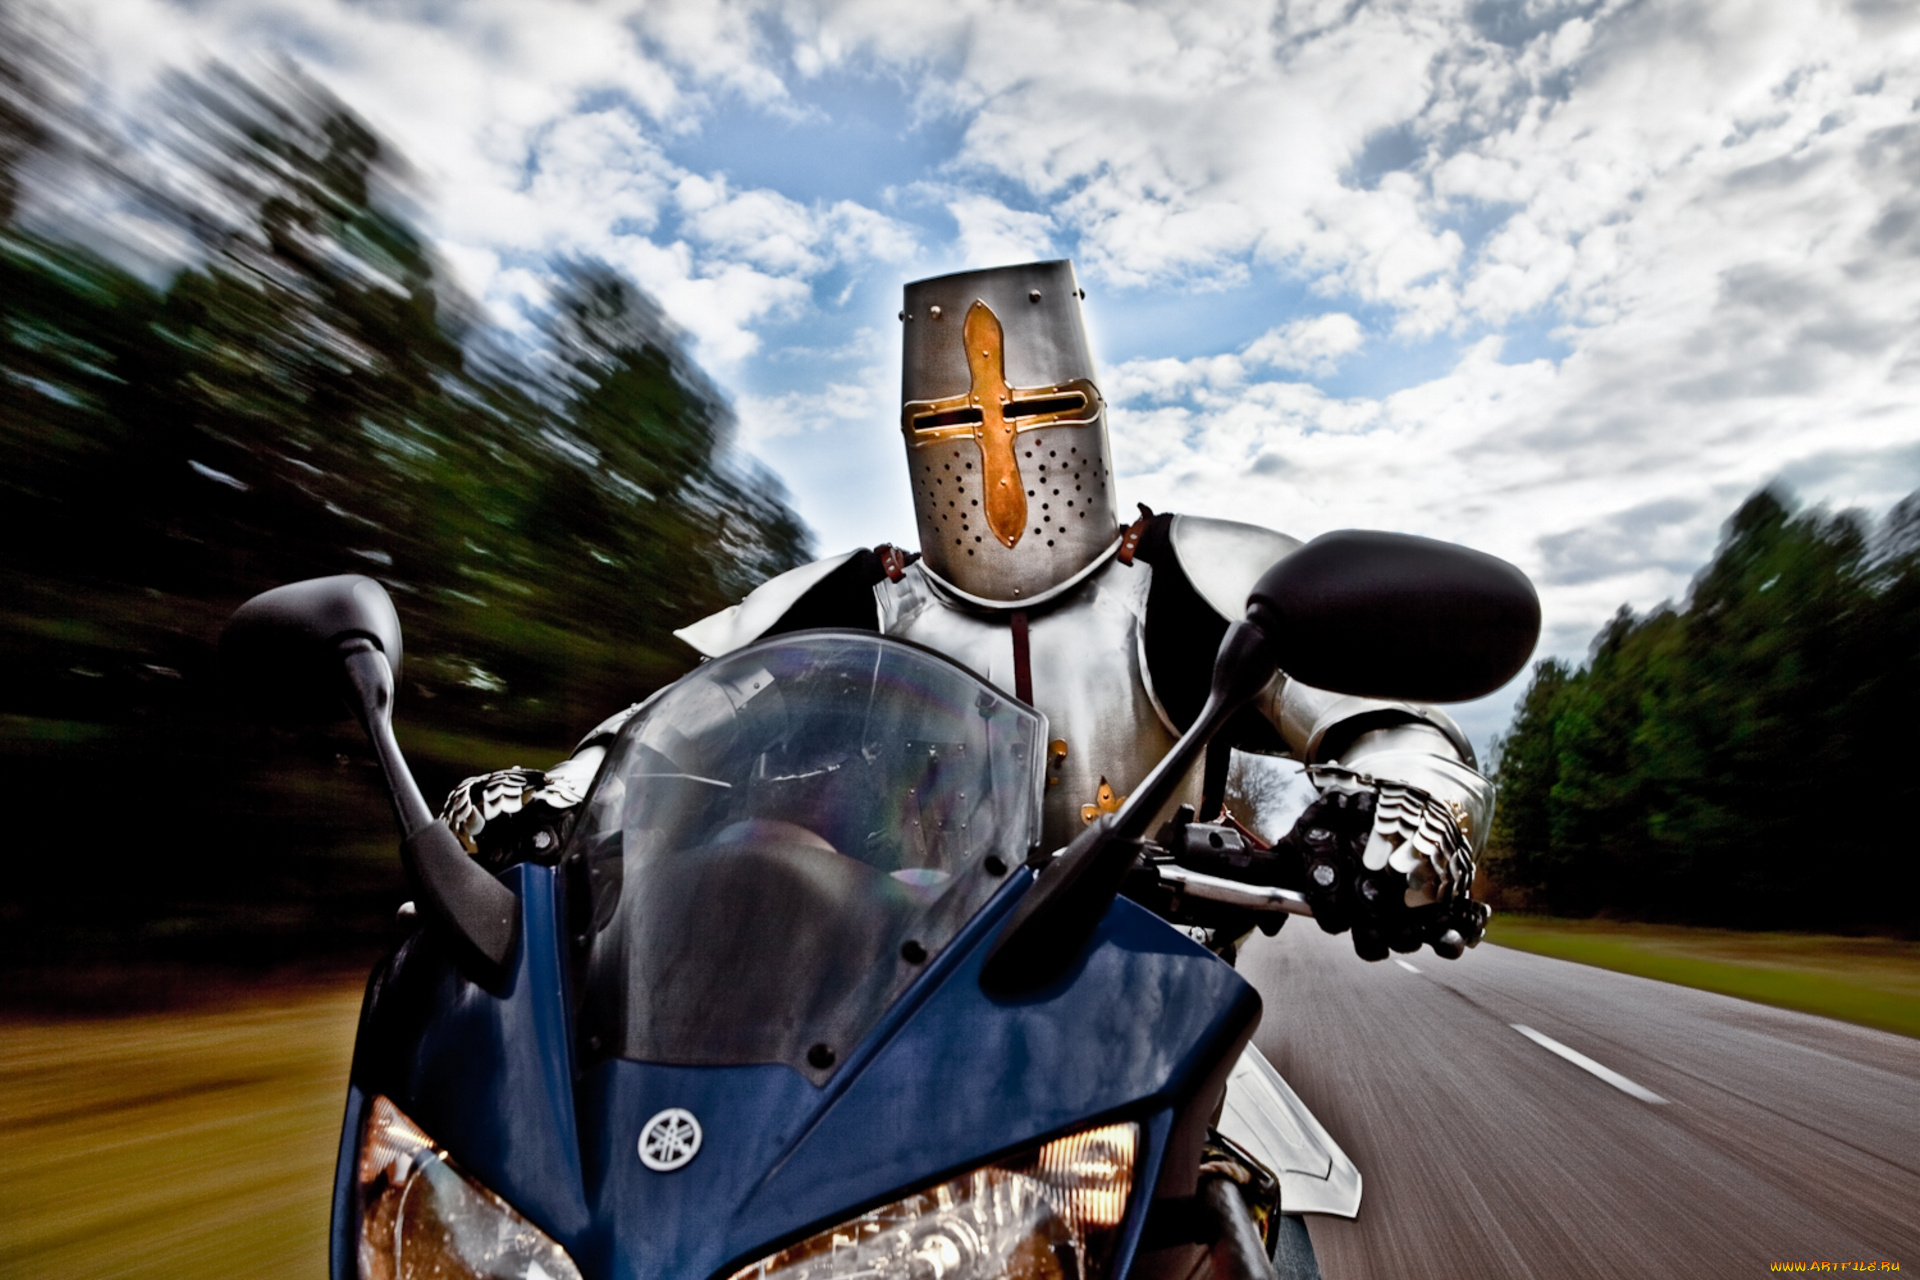 knight, rider, юмор, и, приколы, крестоносец, knight, rider, мотоцикл